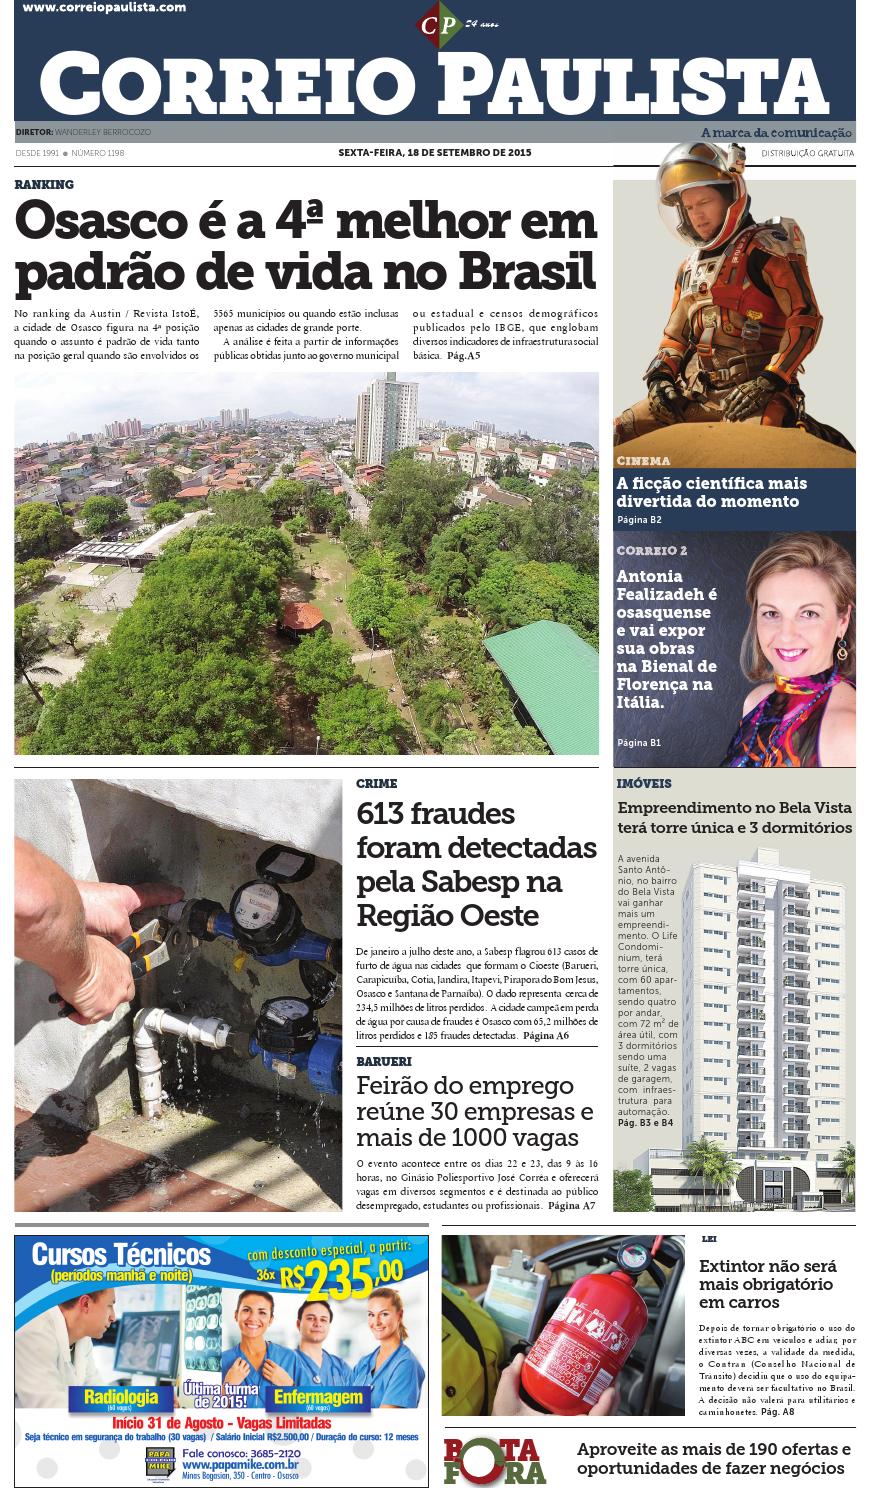 Uncios Vall De Engenhos Explosivos Contactos Curitiba-22098